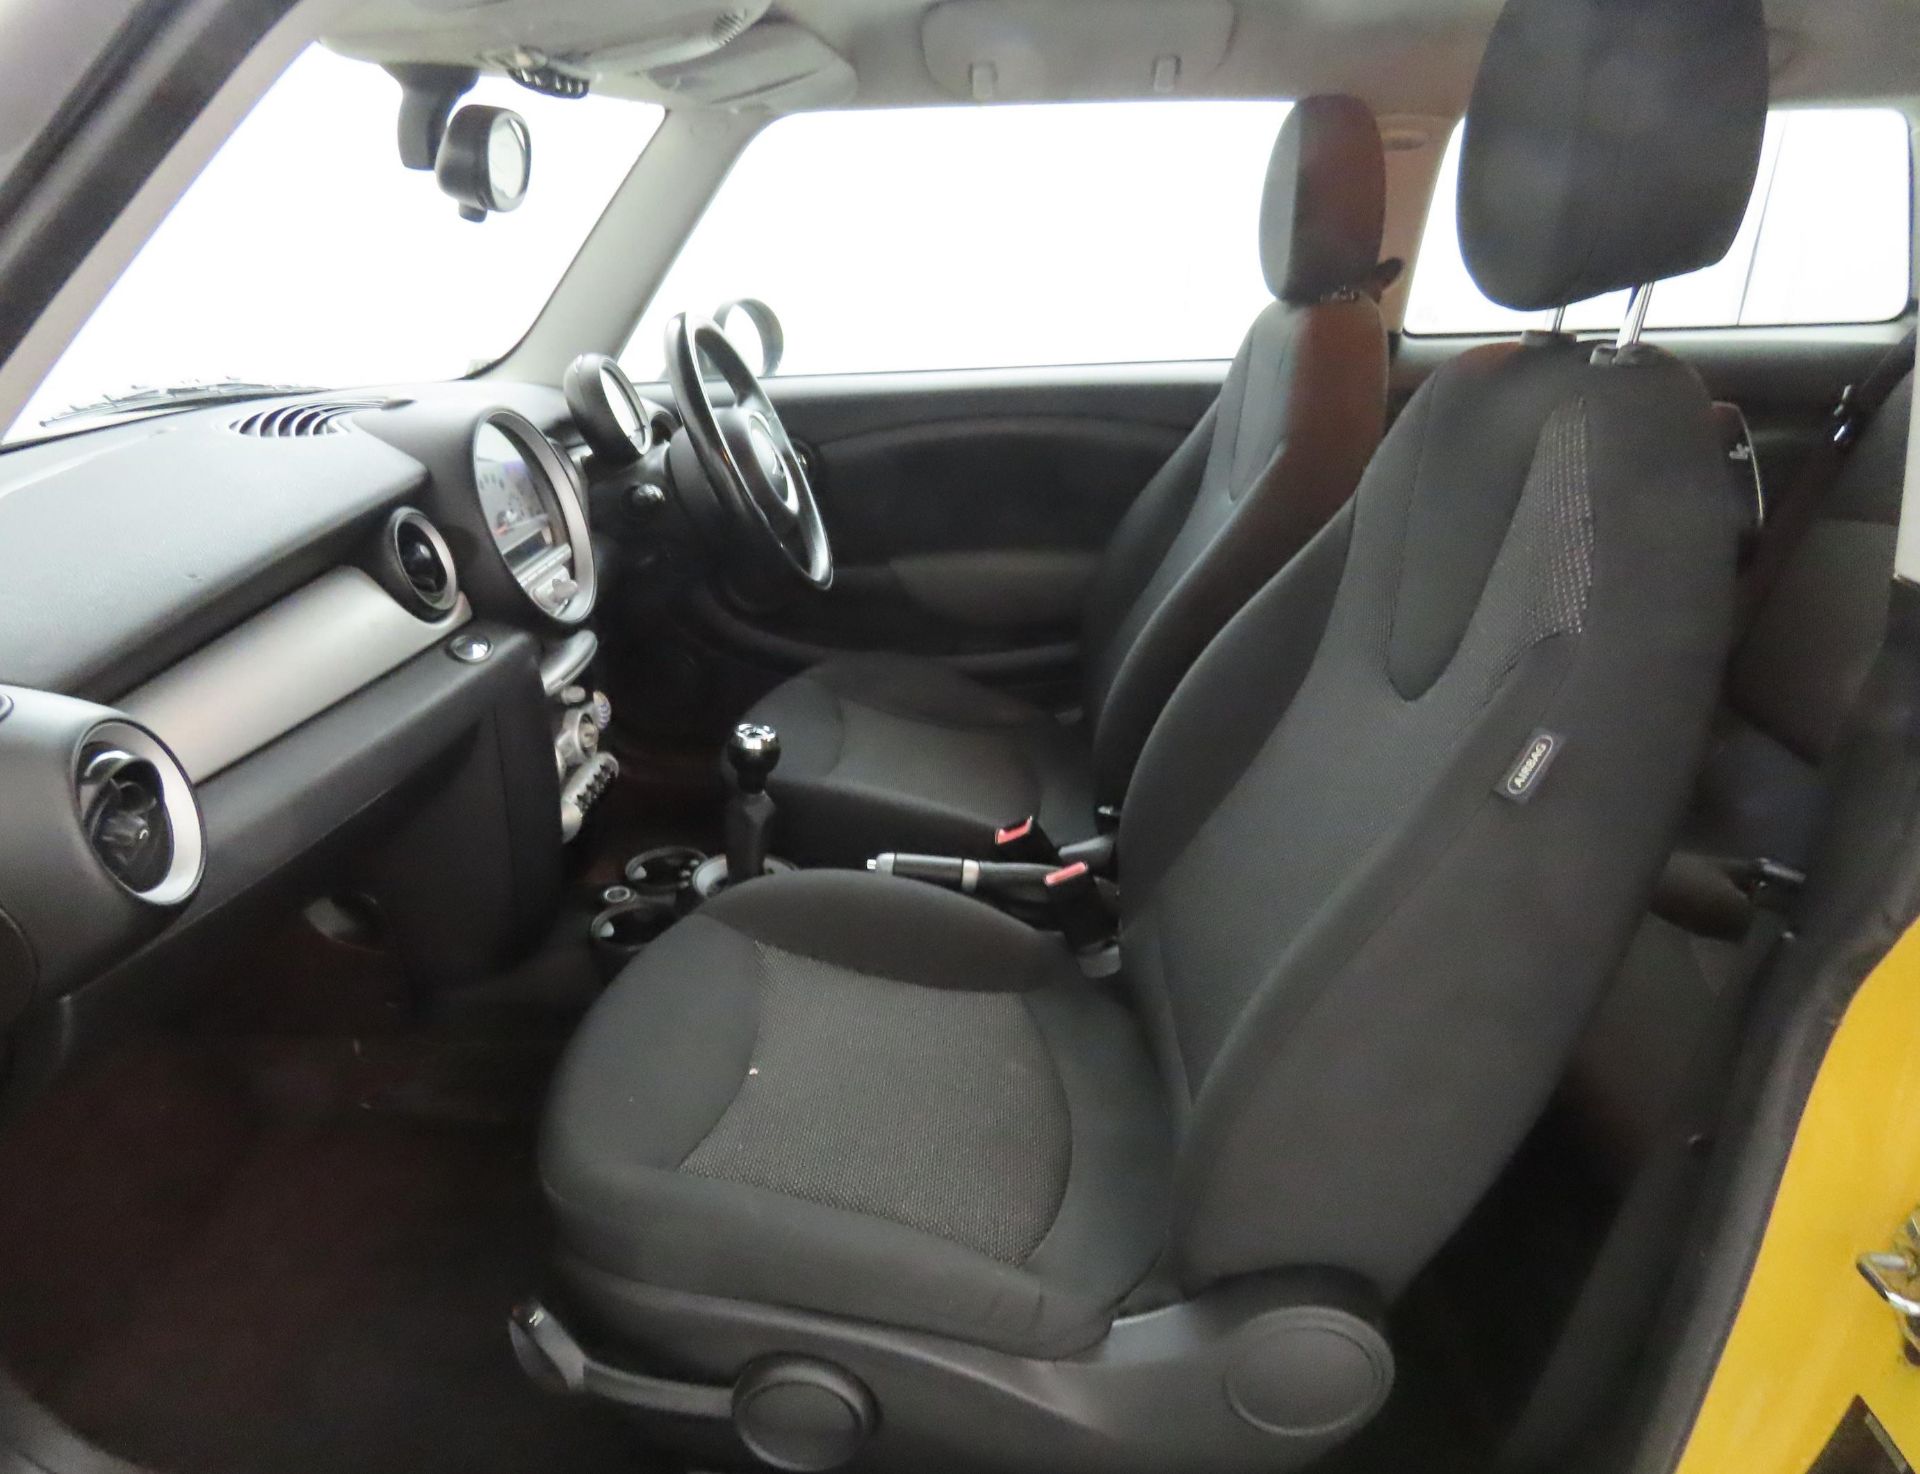 2008 Mini Cooper 1.6 D 3 Door Hatchback - CL505 - NO VAT ON THE HAMMER - Location: Corby, Northampto - Image 7 of 11